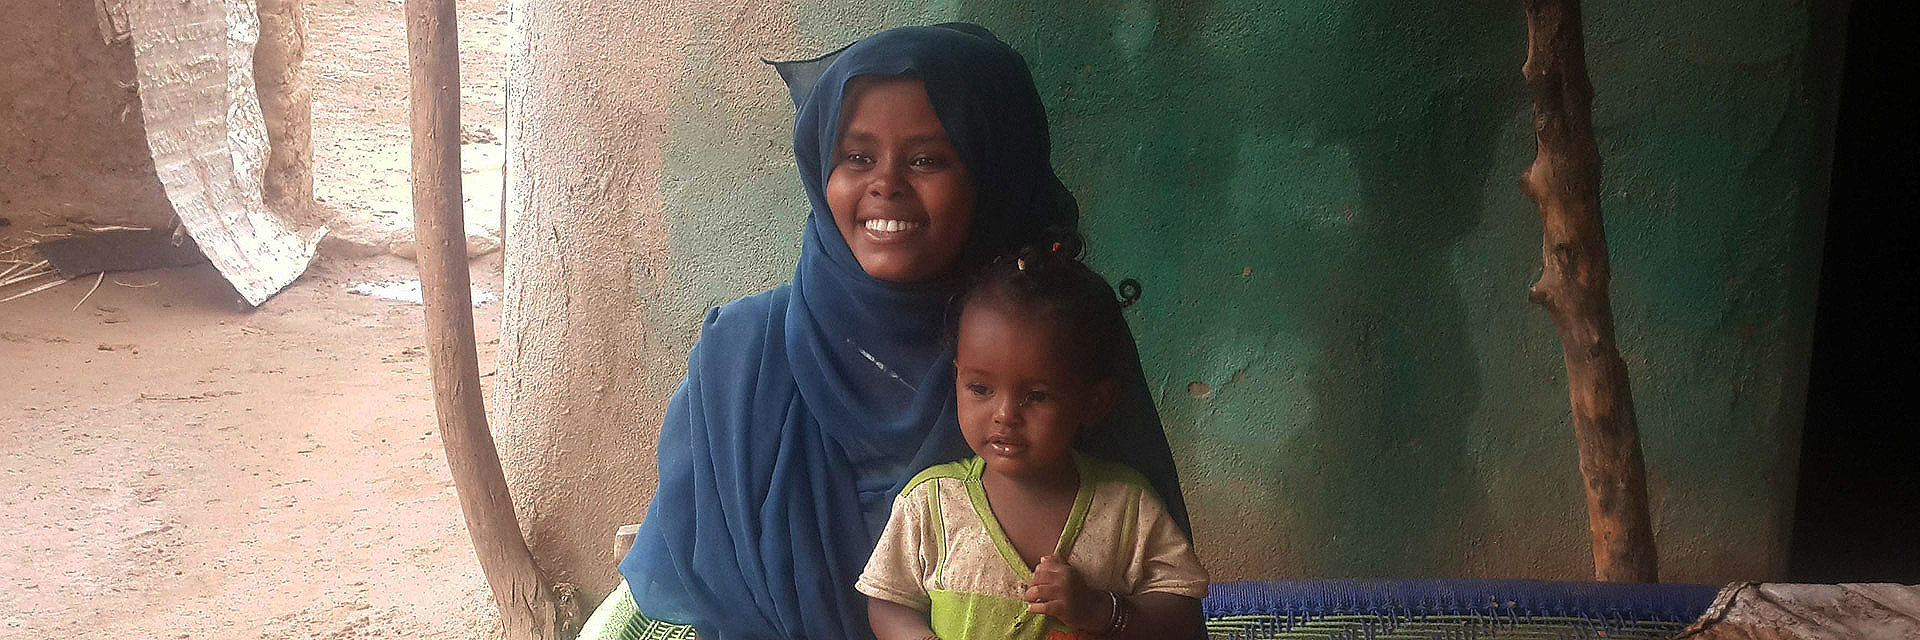 Junge Mutter mit Kind im Sudan